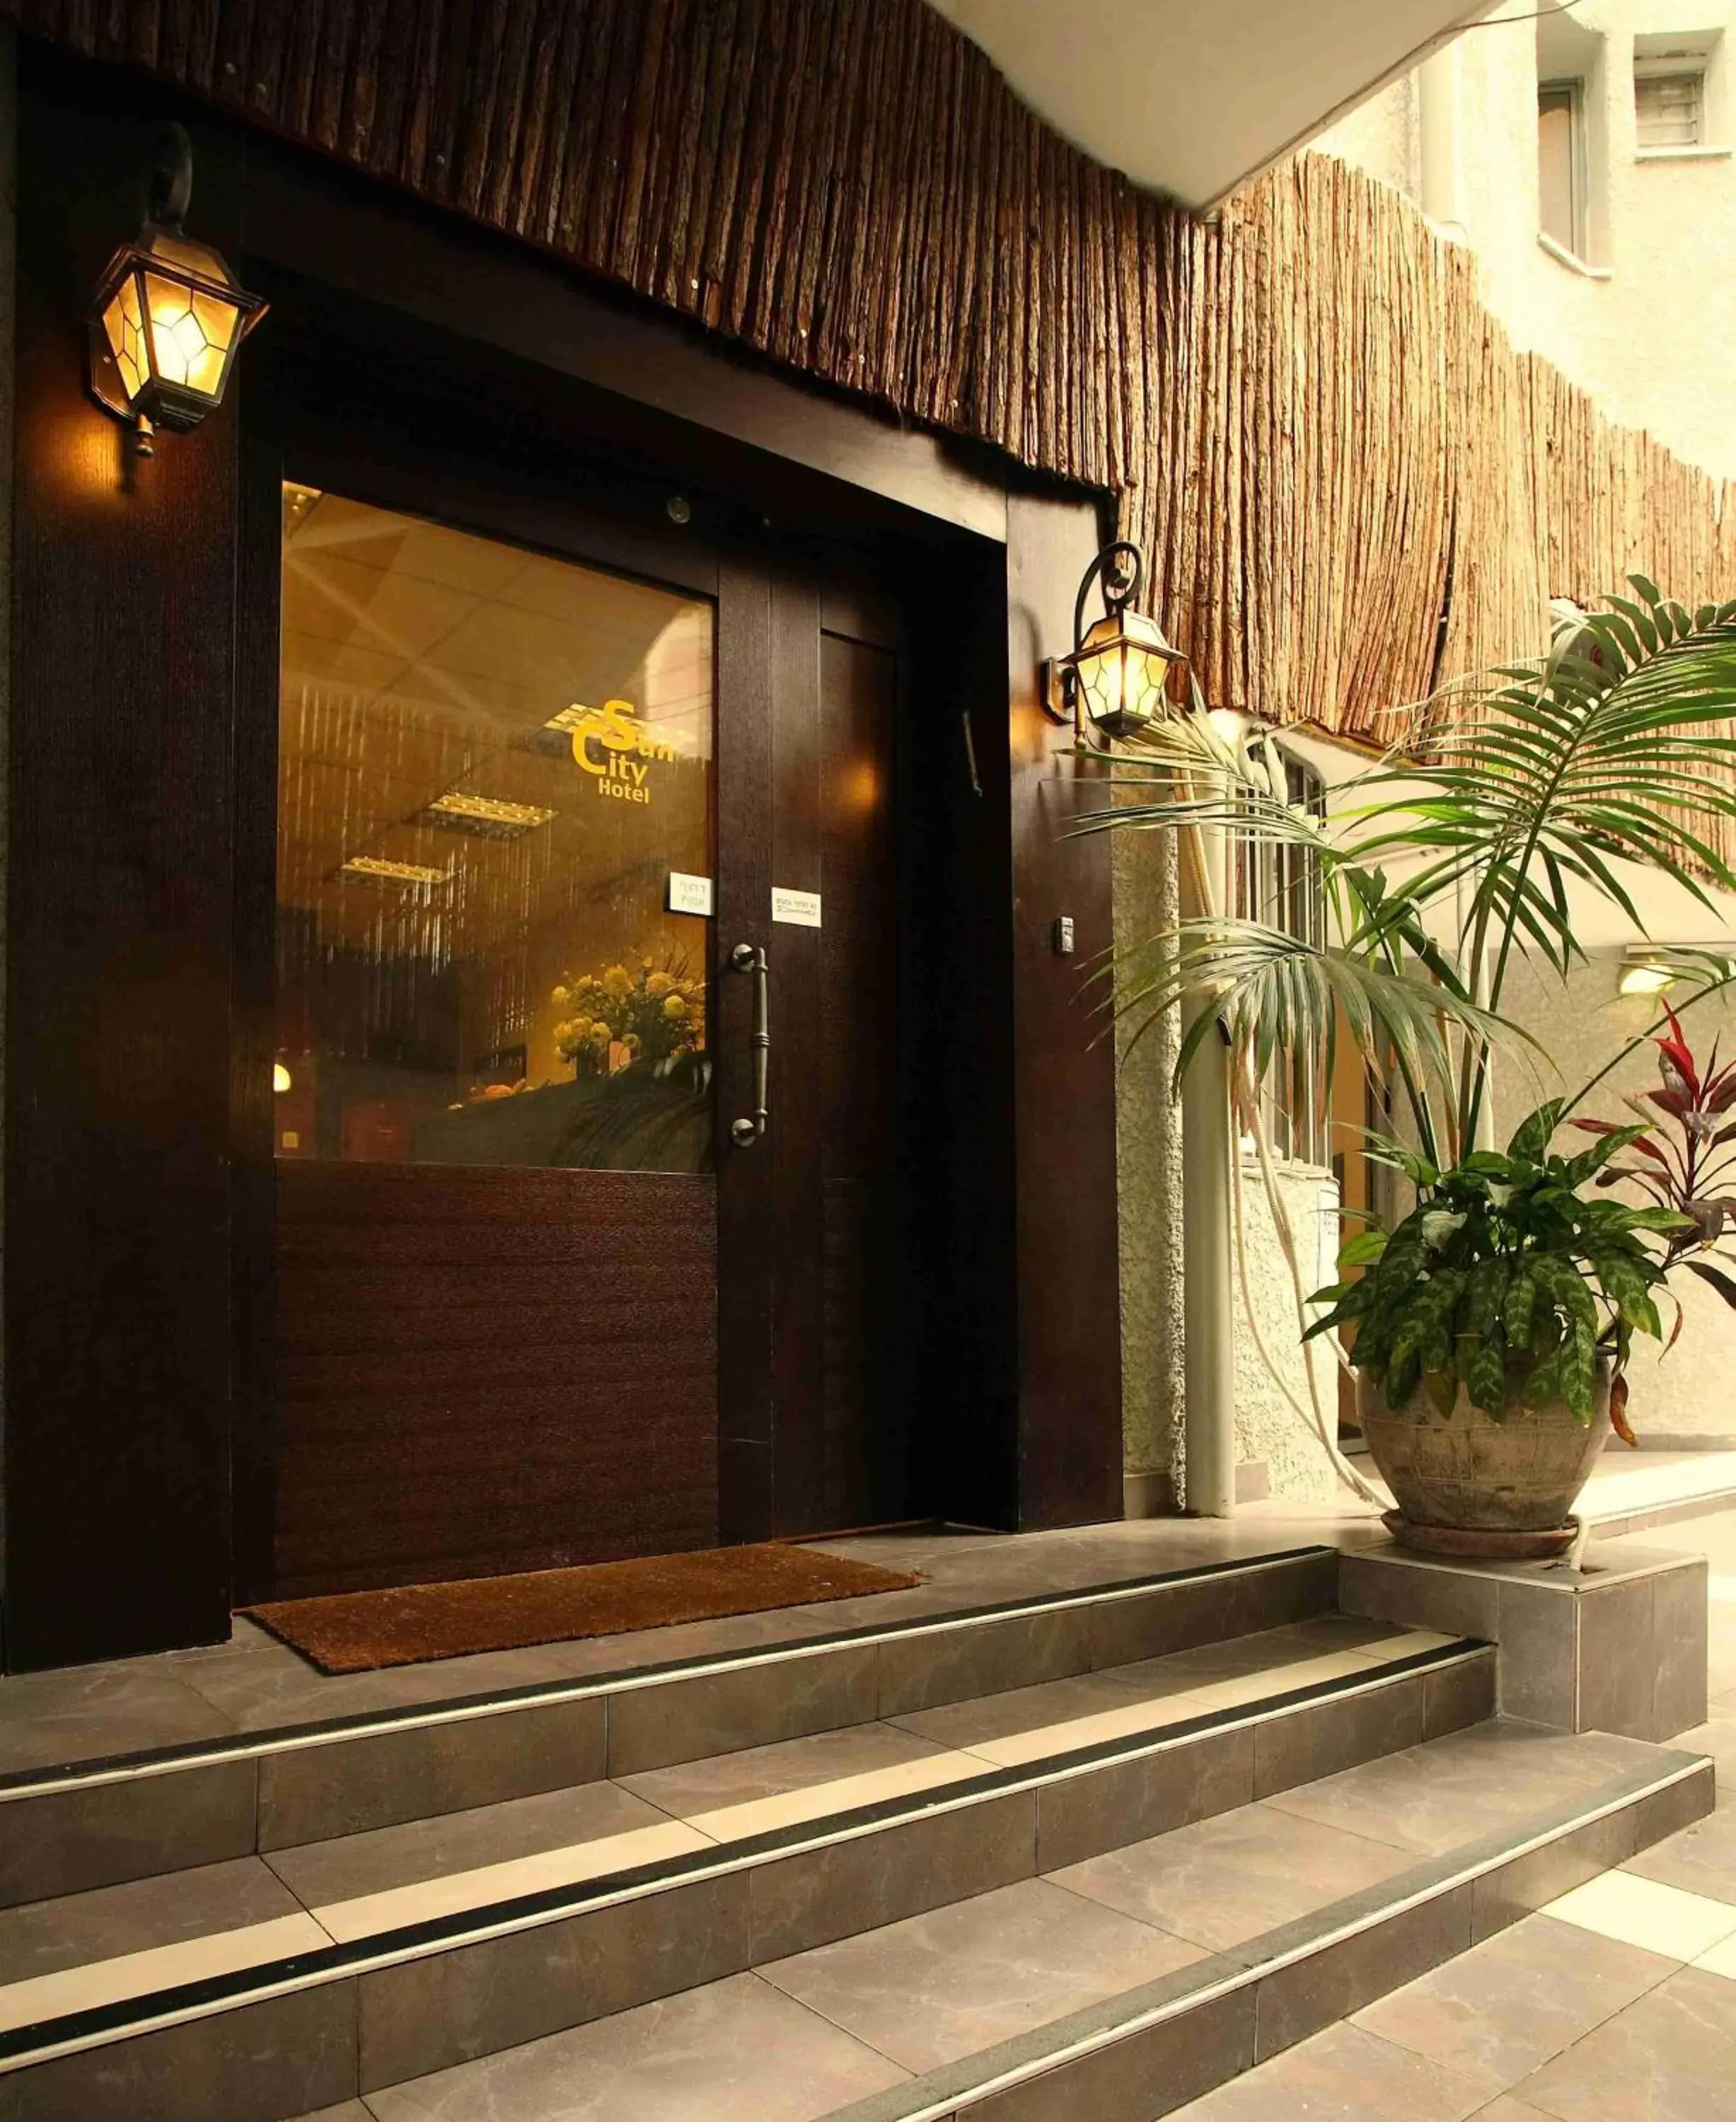 Facade/Entrance in Sun City Hotel